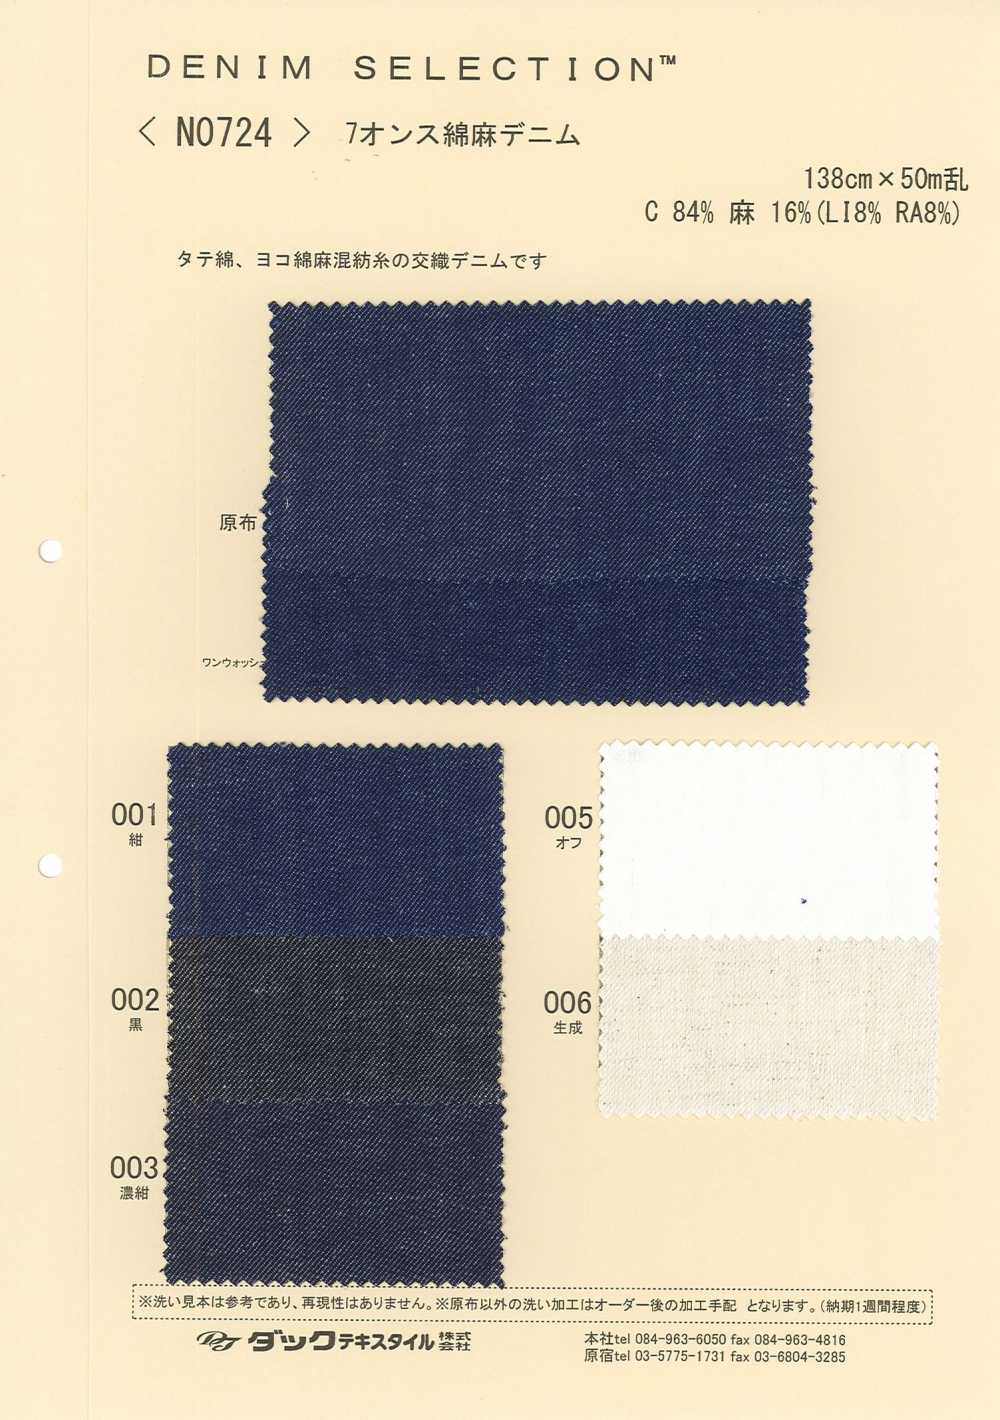 N0724 Linen Denim[Textile / Fabric] DUCK TEXTILE